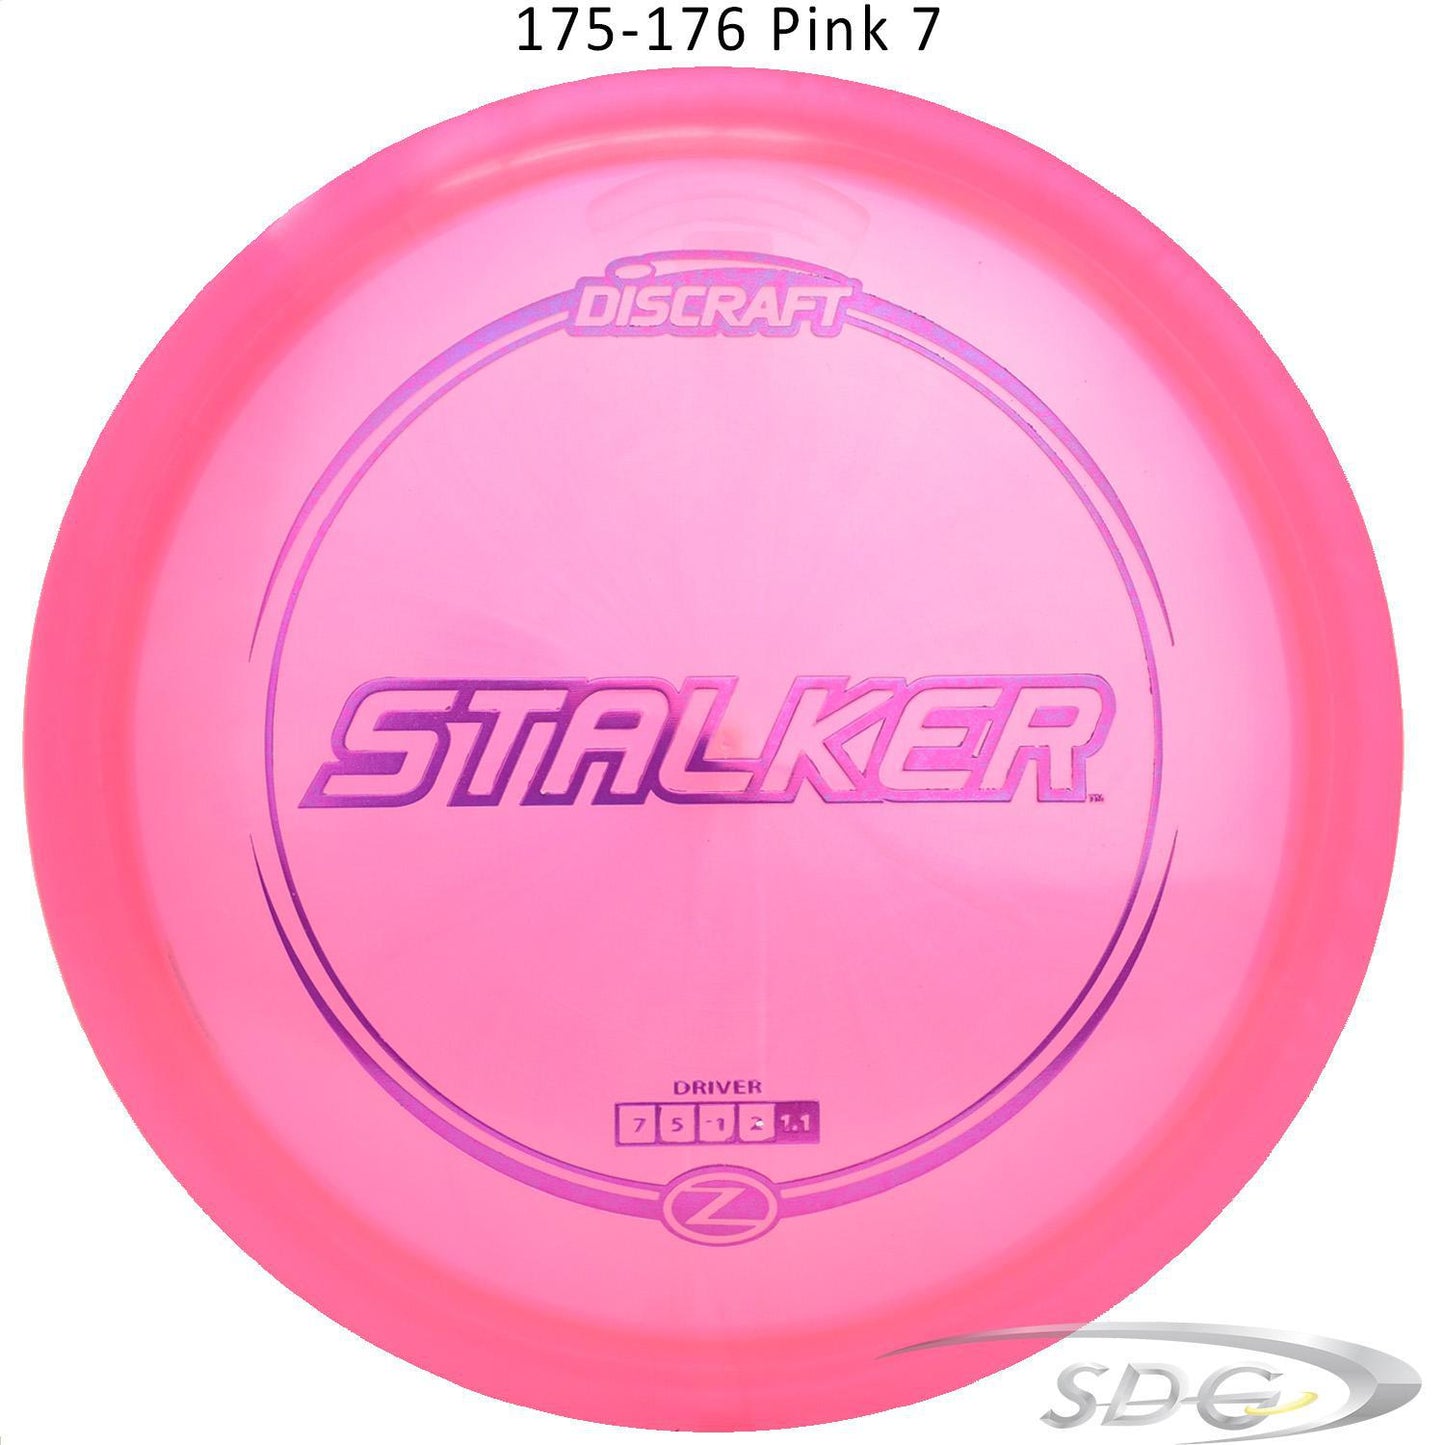 discraft-z-line-stalker-disc-golf-fairway-driver 175-176 Pink 7 